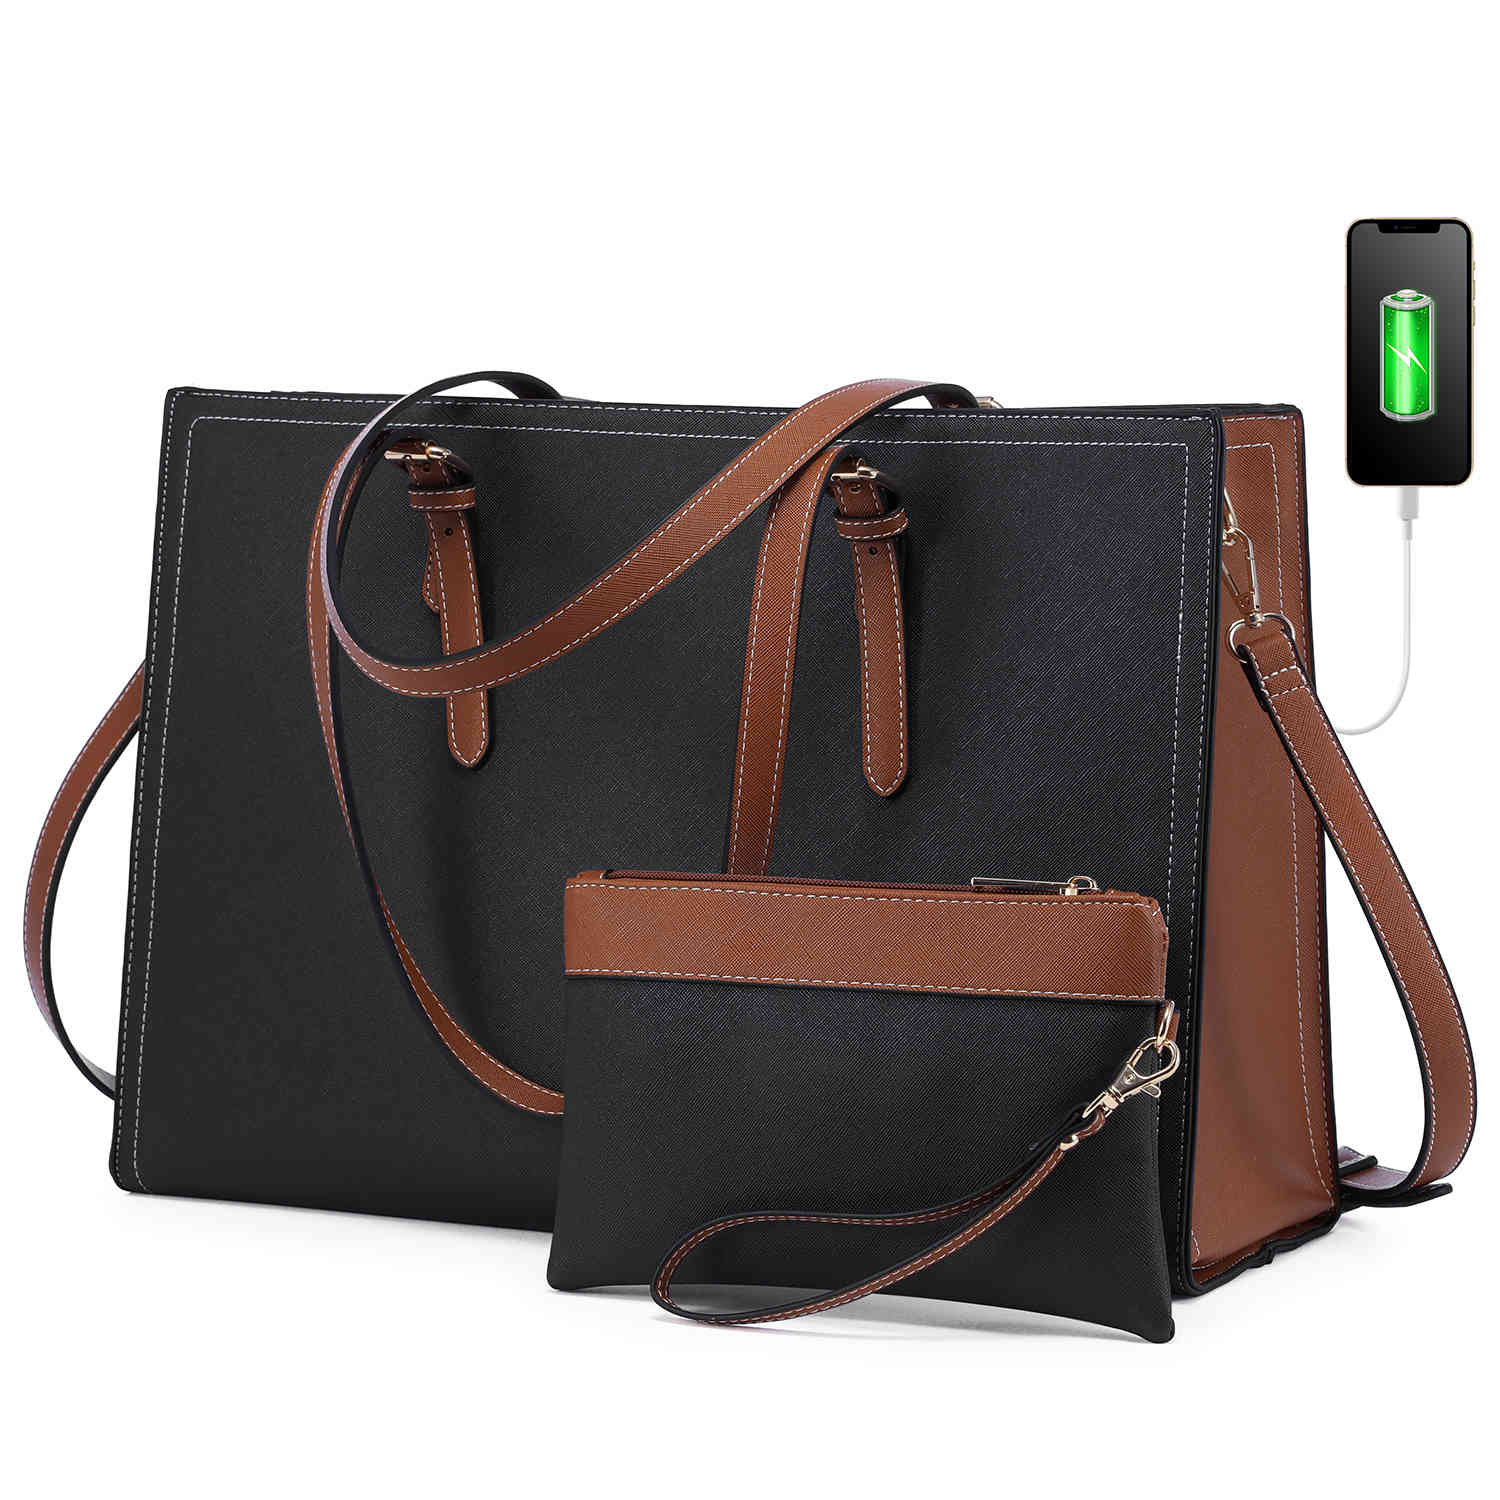 Buy VILL OKSE Black Genuine Leather Executive Formal Office Bag | Shoulder Laptop  Messenger Bag For Men | MacBook|NoteBook Upto 16 Inch| Crossbody Handbags  with Shoulder Straps | 2 Main Compartment Online